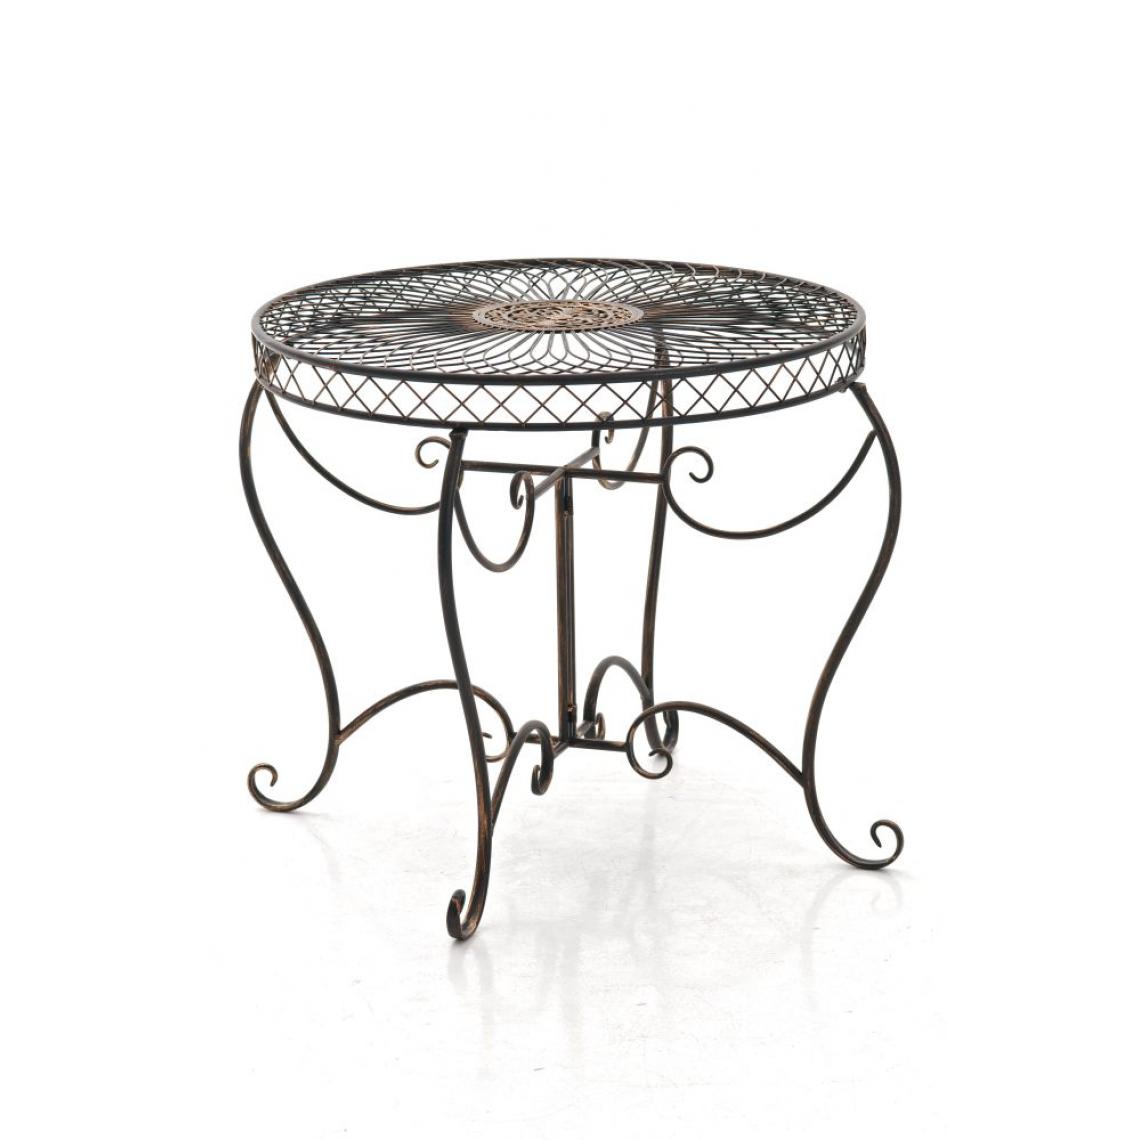 Icaverne - Chic Table de categorie Djibouti couleur bronze - Ensembles tables et chaises